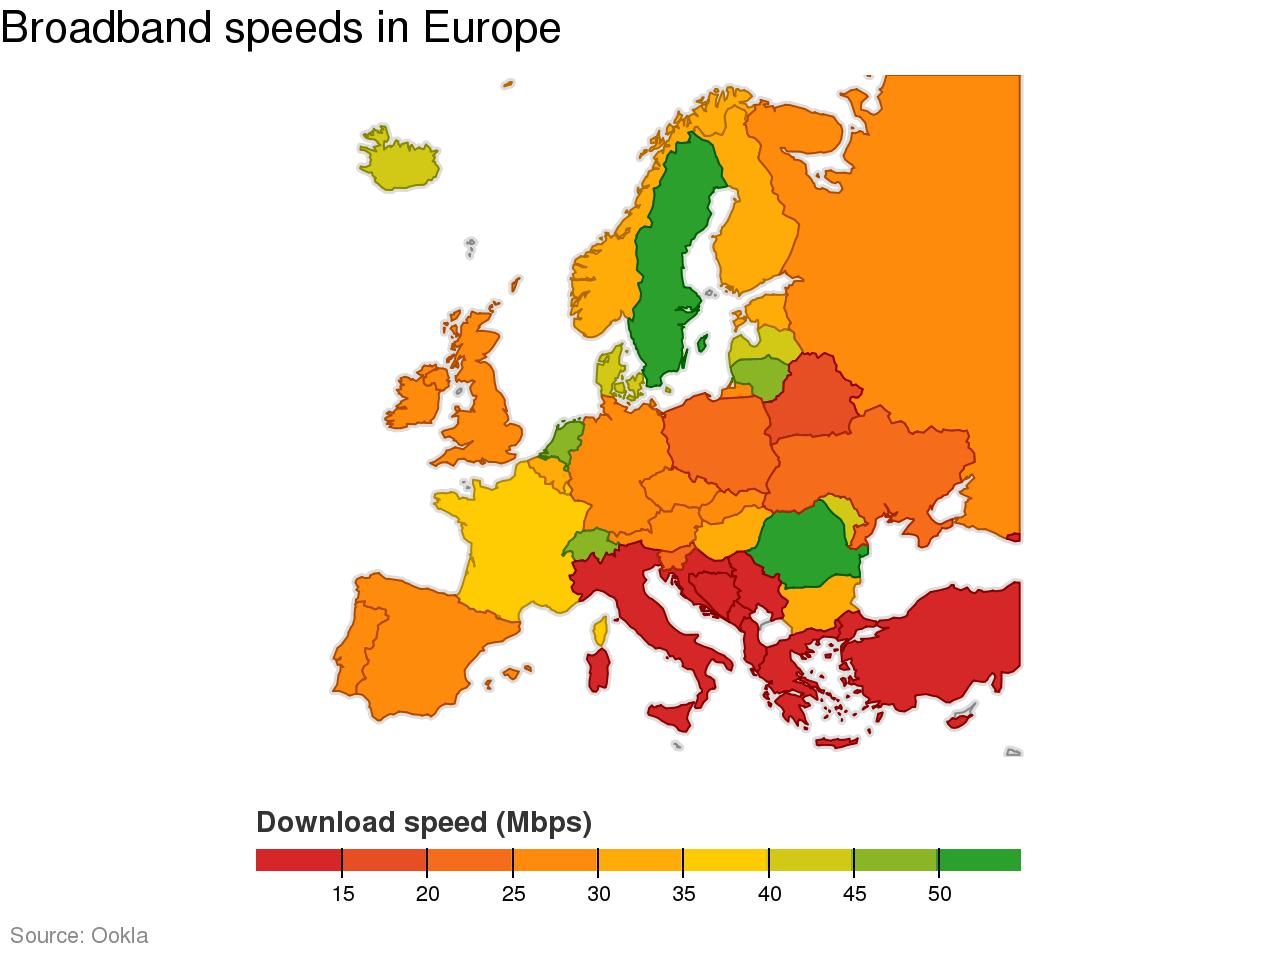 Τρίτη από το τέλος η Ελλάδα, σε ταχύτητα σύνδεσης στο Internet, σε σχέση με τις υπόλοιπες ευρωπαϊκές χώρες